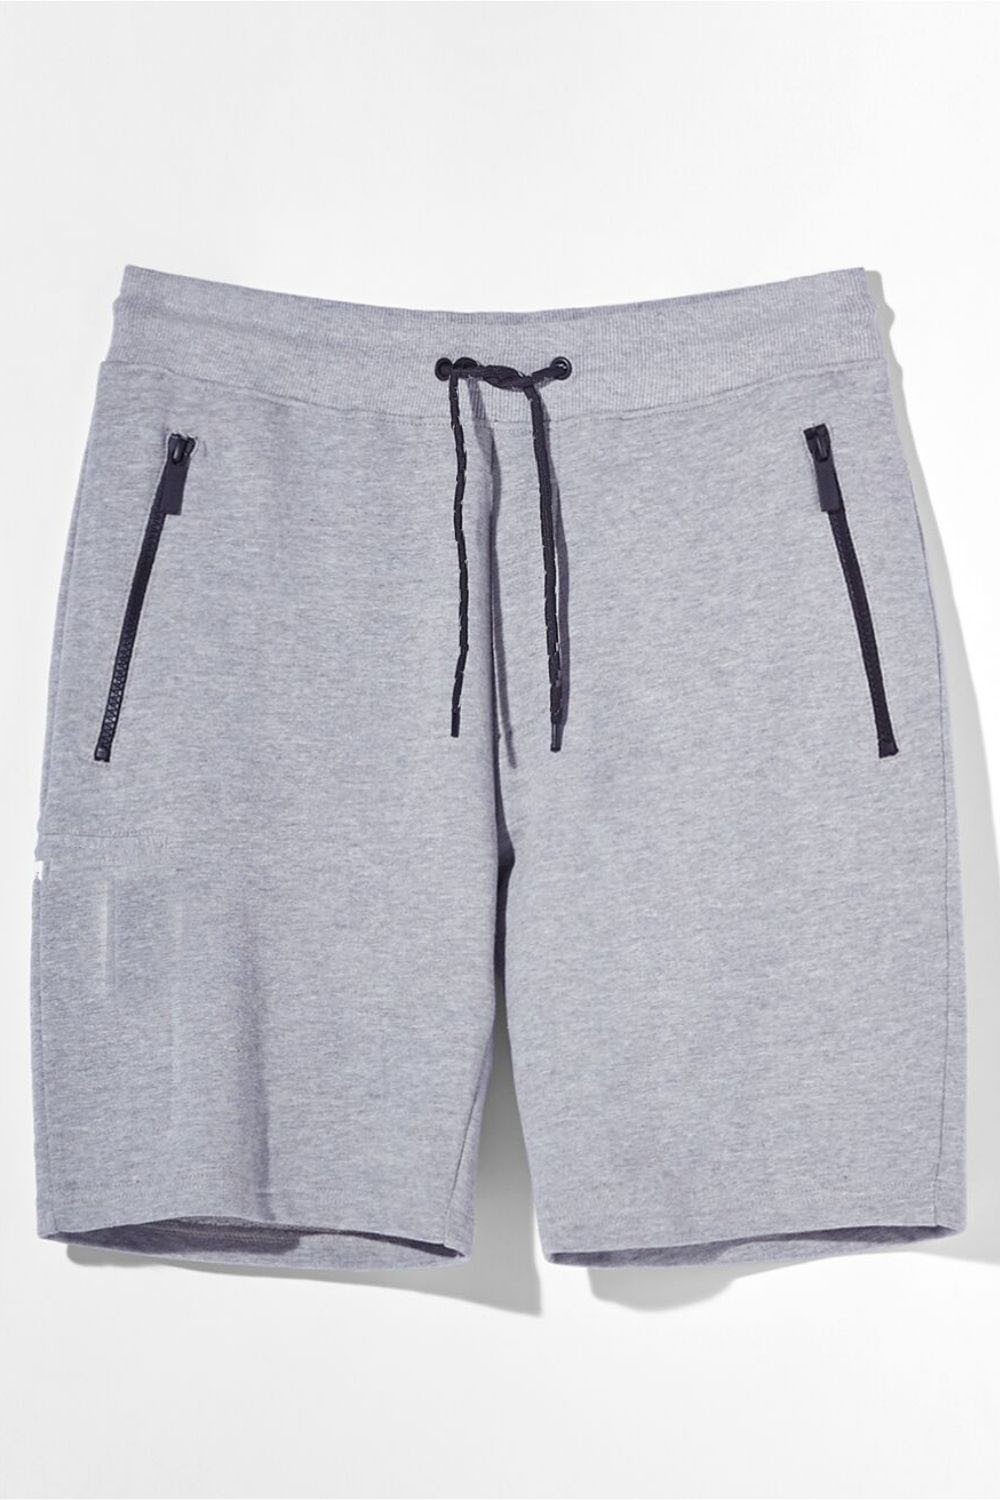 Black Drawstring Shorts Grey